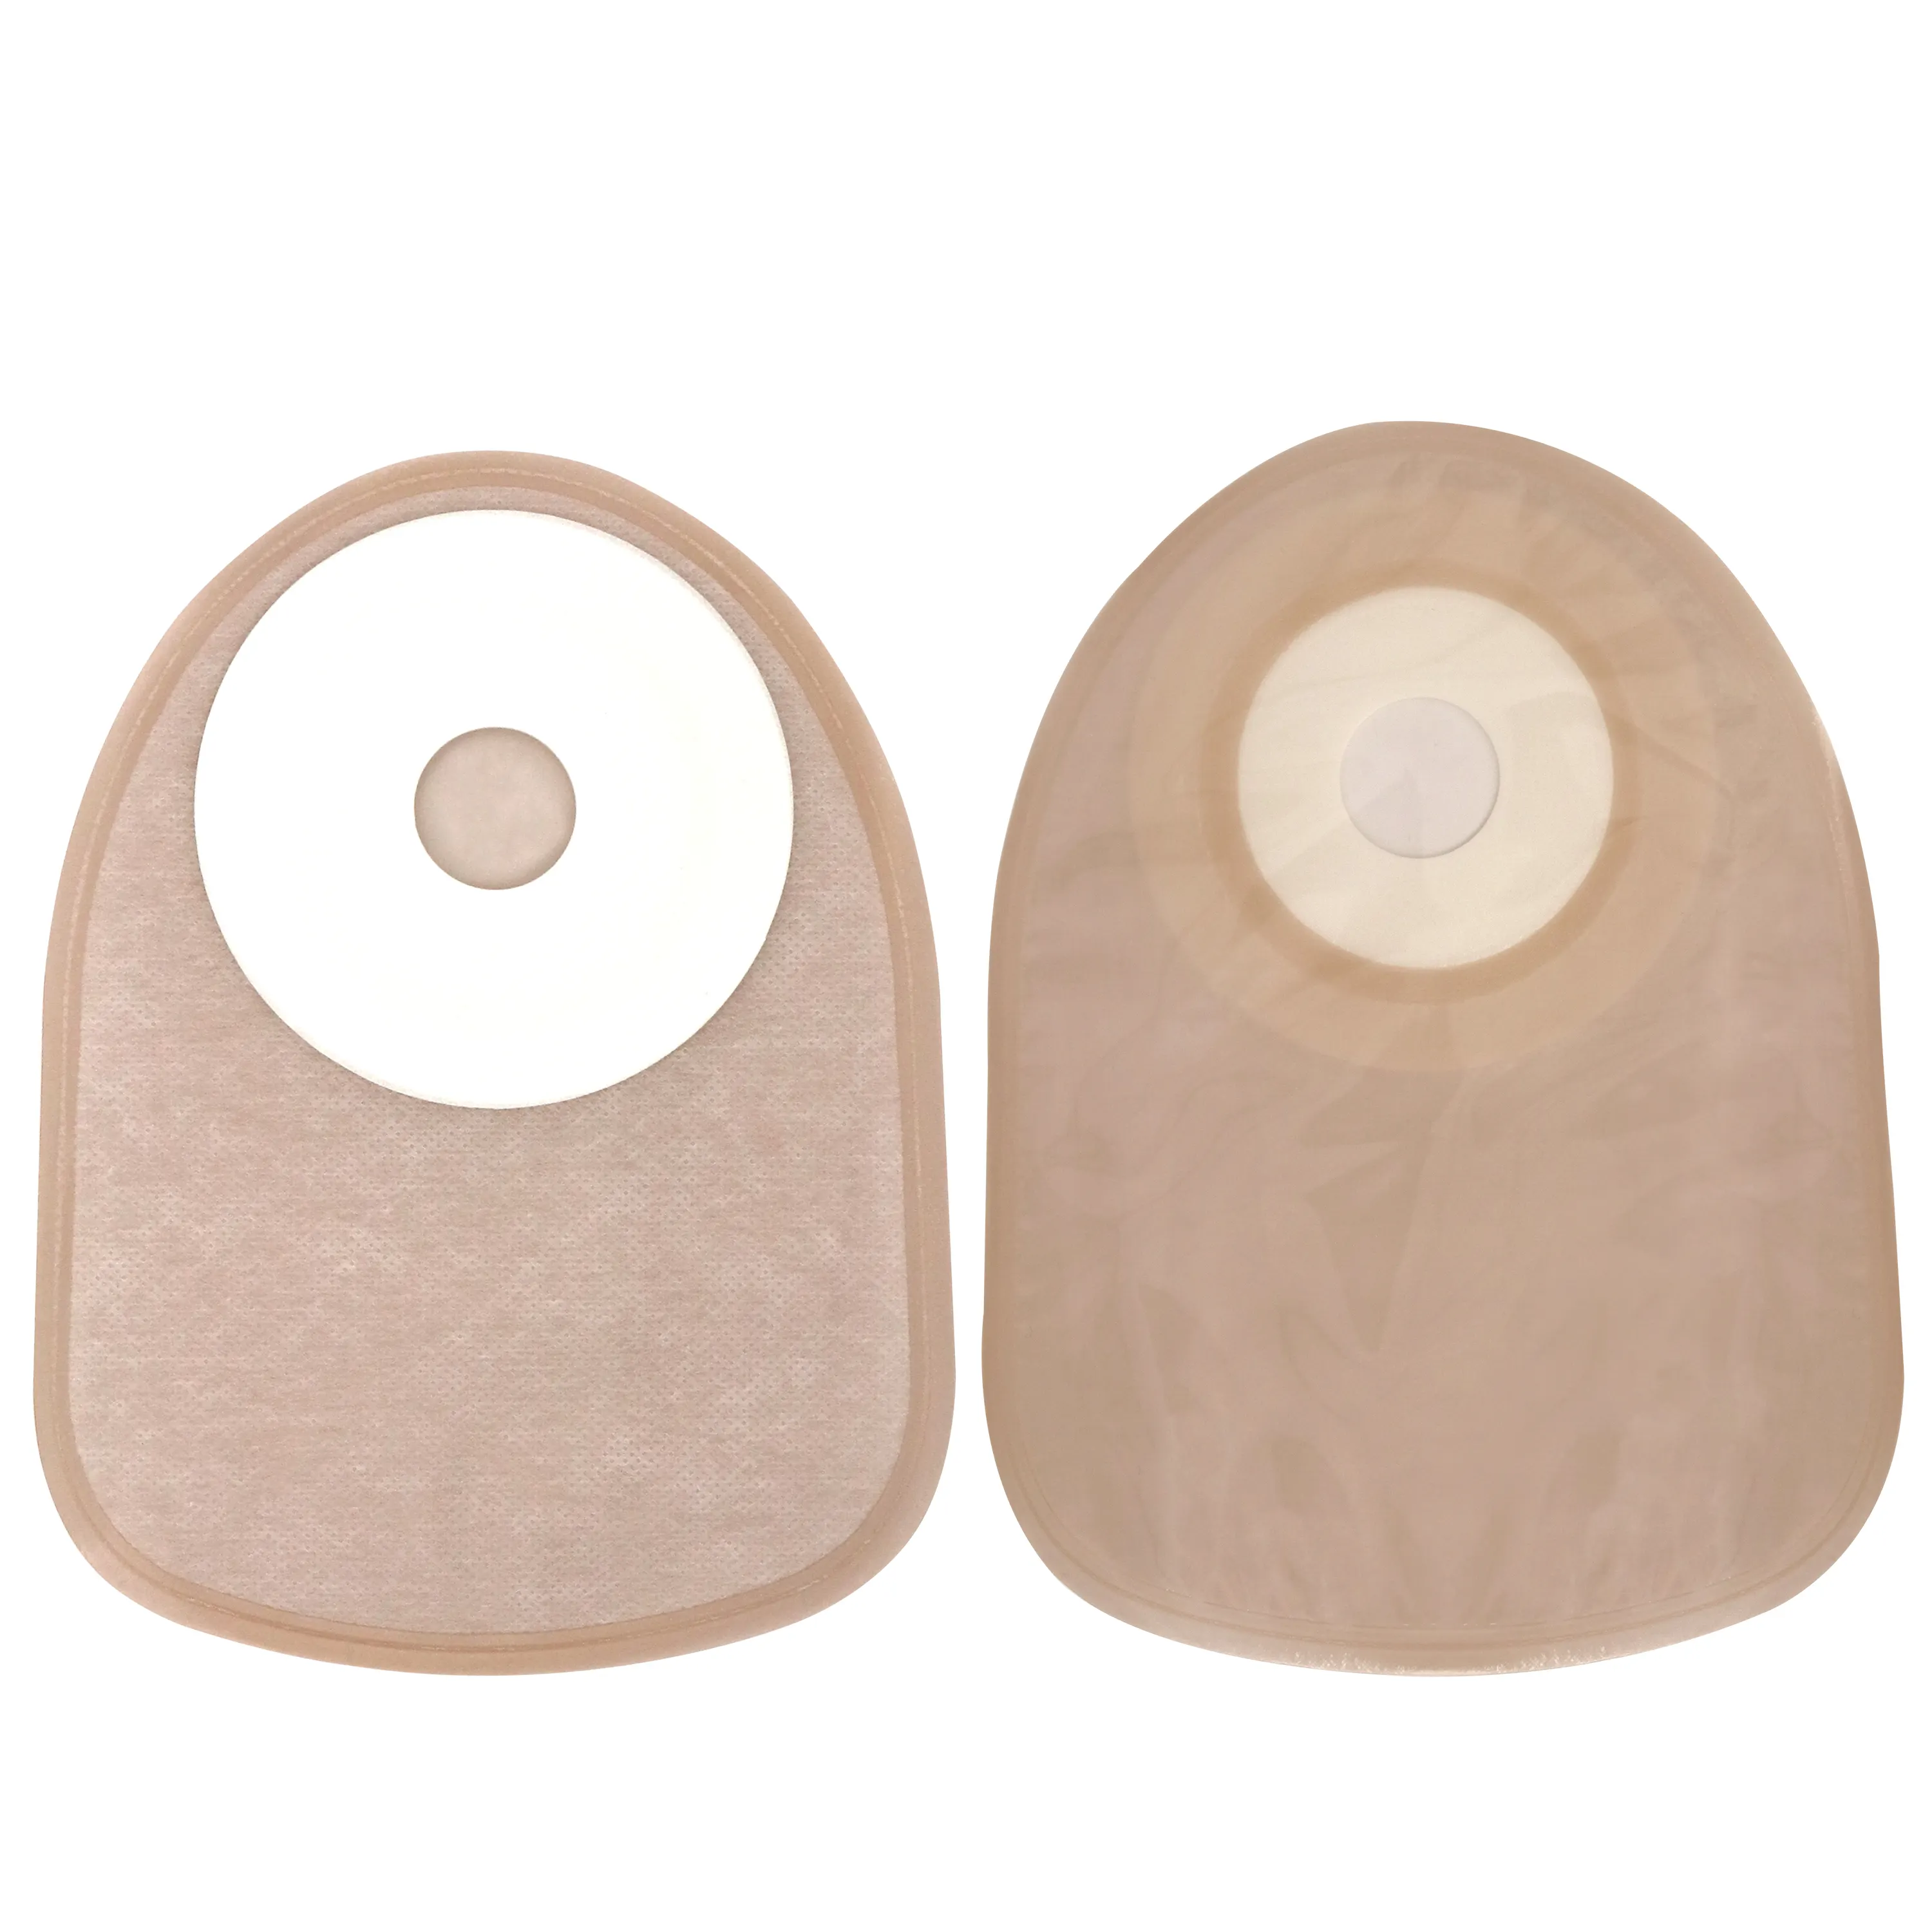 Sacos do malote do ostomy da categoria médica 1 parte saco plástico descartável do estoma colostomy malote sacos 50mm